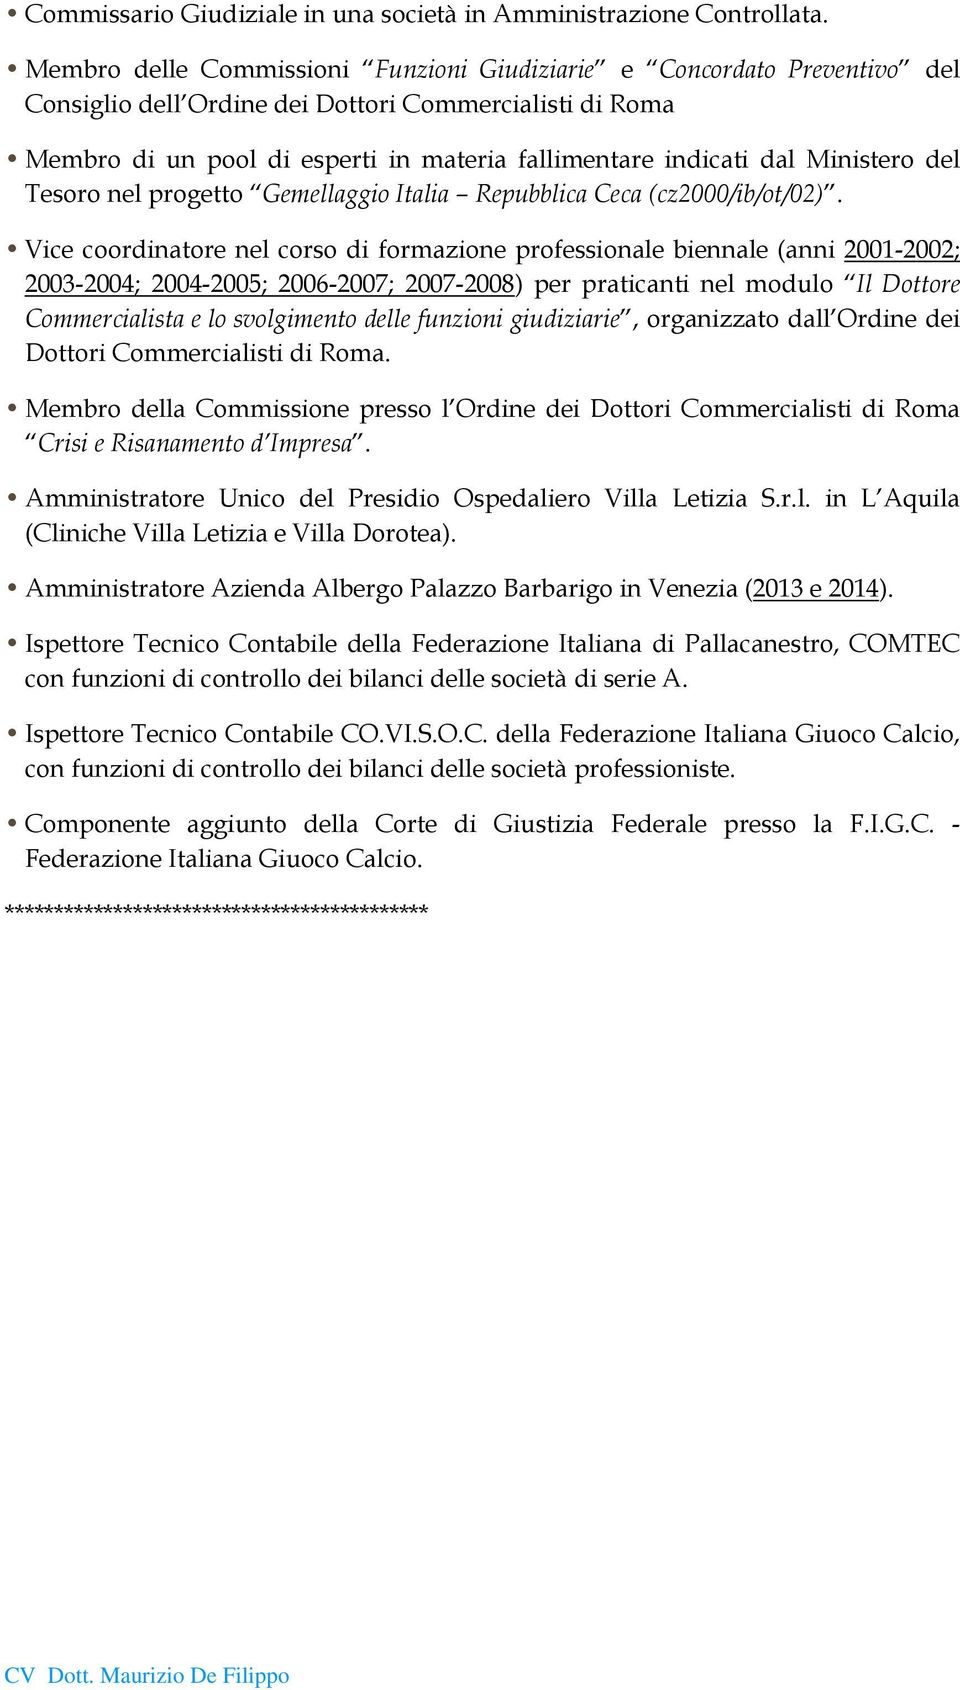 Ministero del Tesoro nel progetto Gemellaggio Italia Repubblica Ceca (cz2000/ib/ot/02).